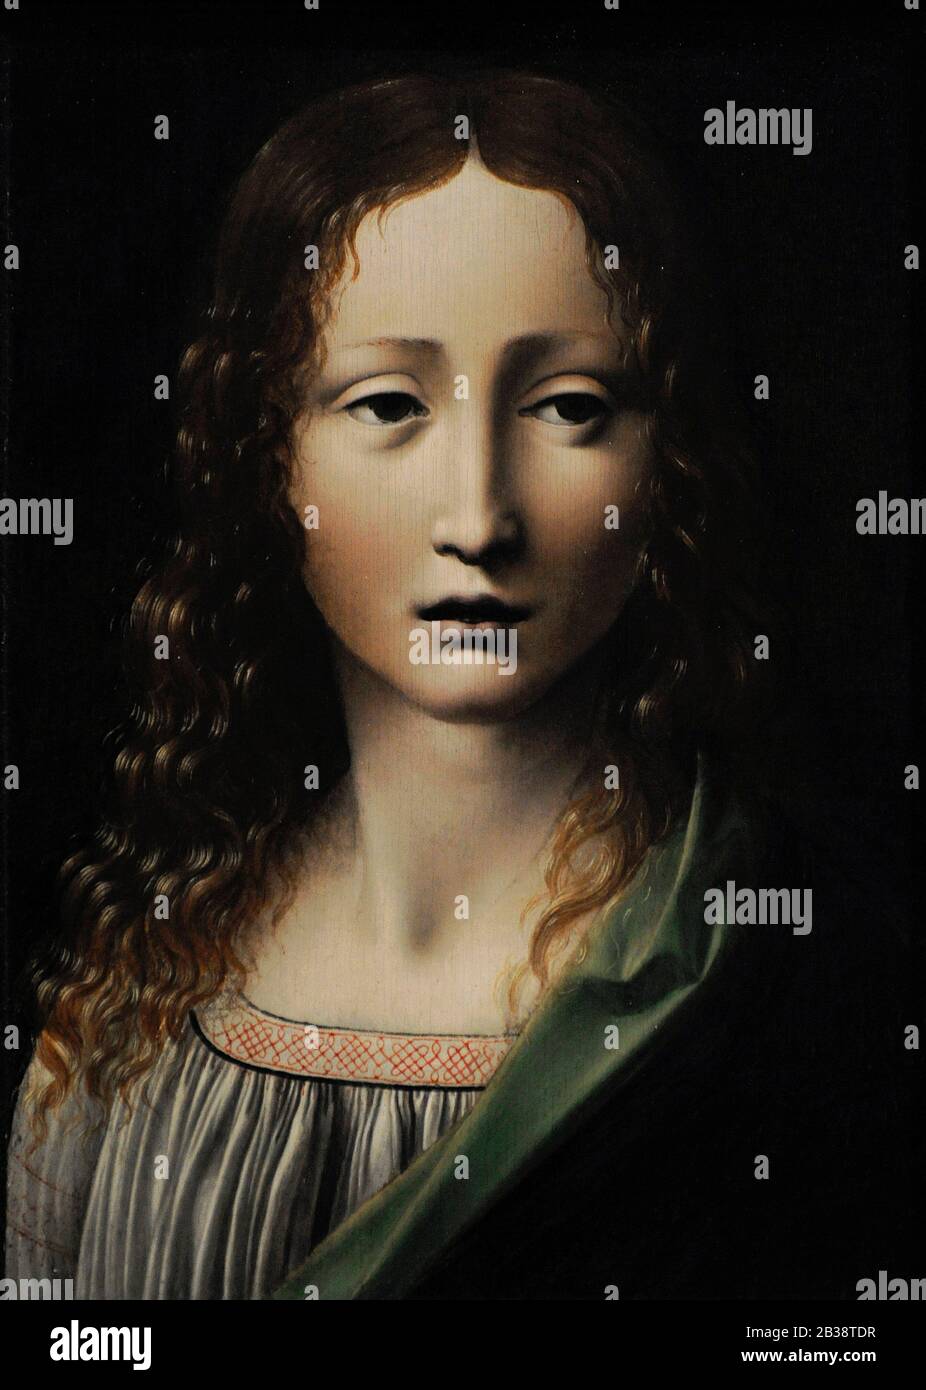 Mailänder Kreis von Leonardo da Vinci. Ende des 15. Jahrhunderts. Junger Christus. Lazaro Galdiano Museum. Madrid. Spanien. Stockfoto